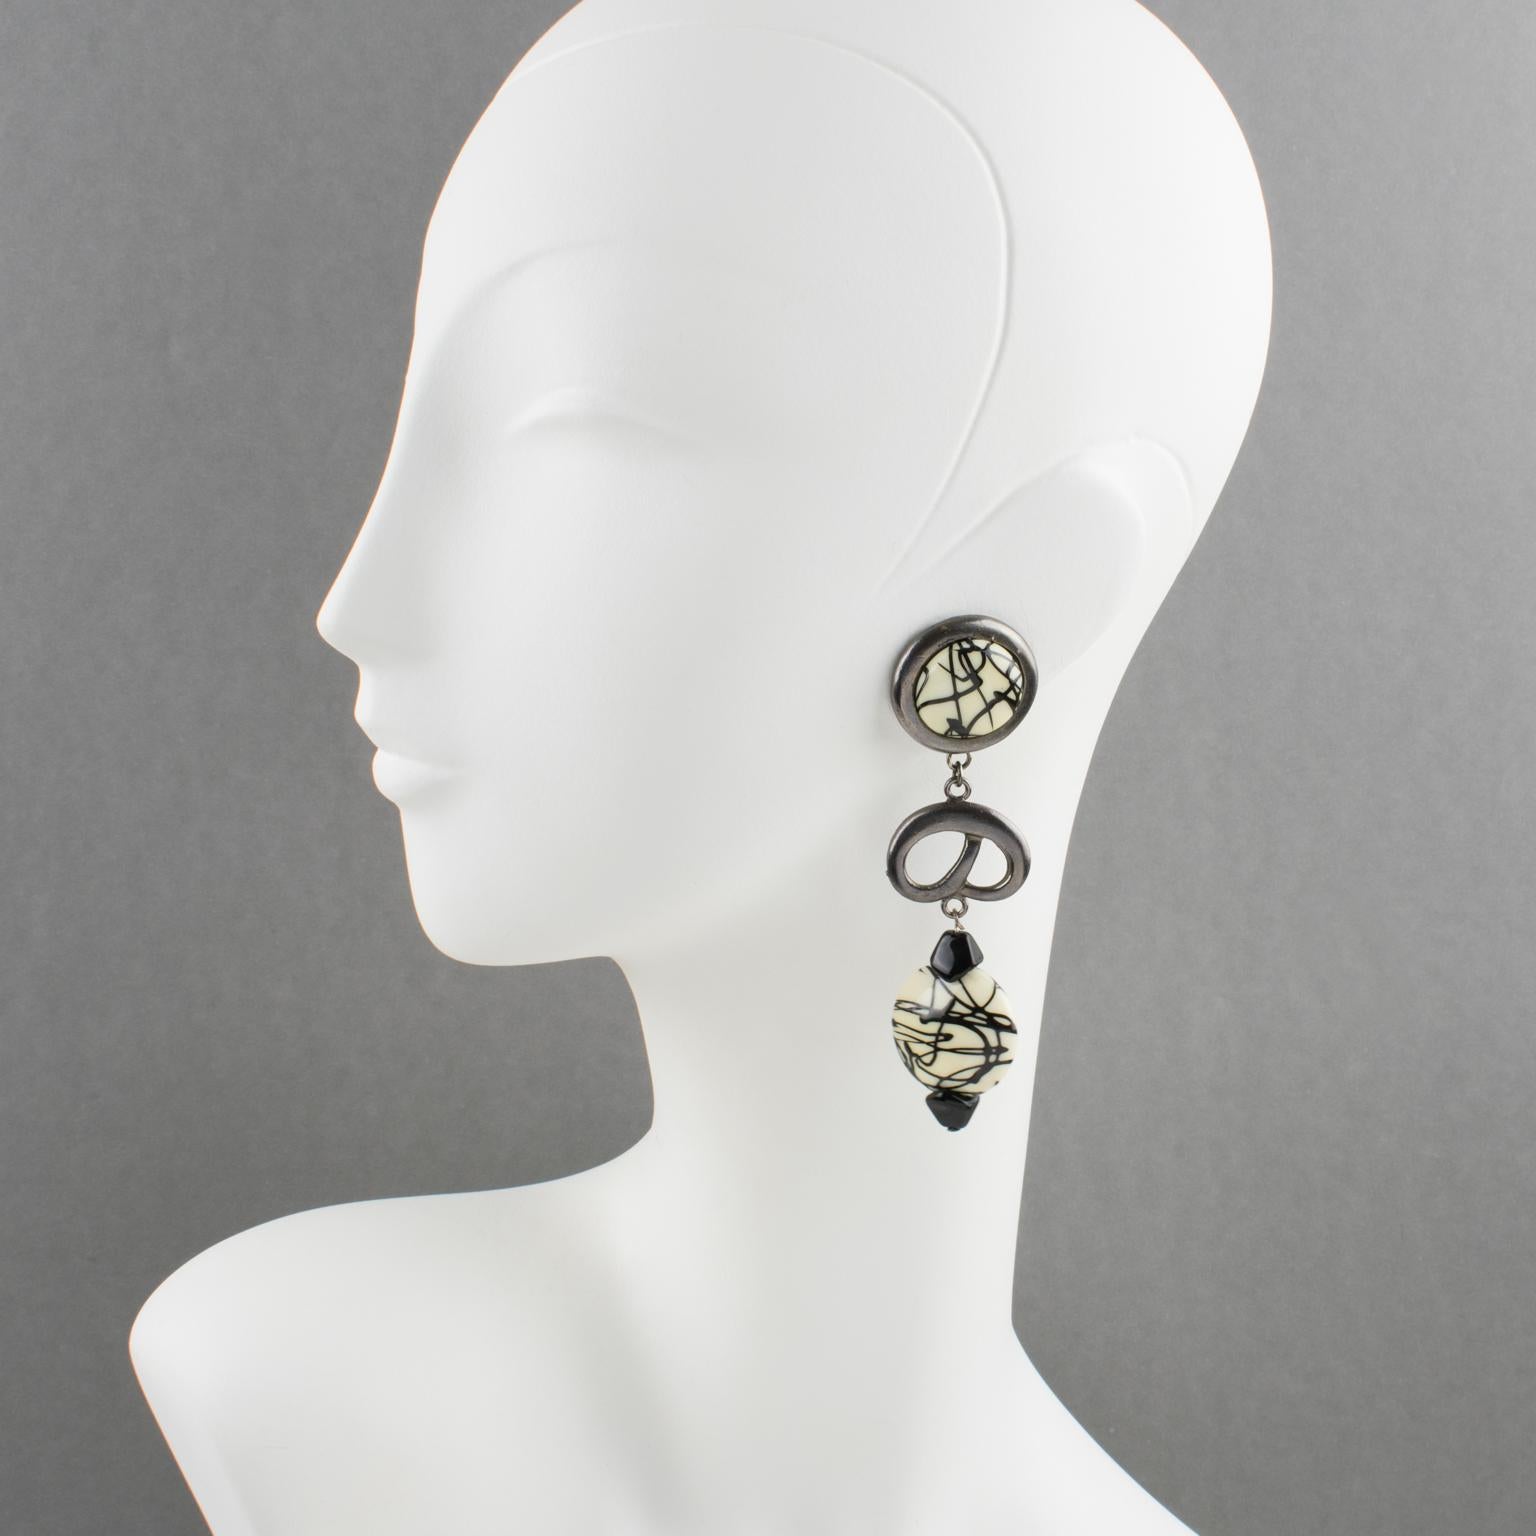 Ces superbes boucles d'oreilles à clip de Paco Rabanne Paris ont une touche futuriste. Elles sont composées d'une longue goutte pendante en métal de couleur gunmetal, entièrement sculpté et transparent, surmonté d'un cabochon en résine et de perles